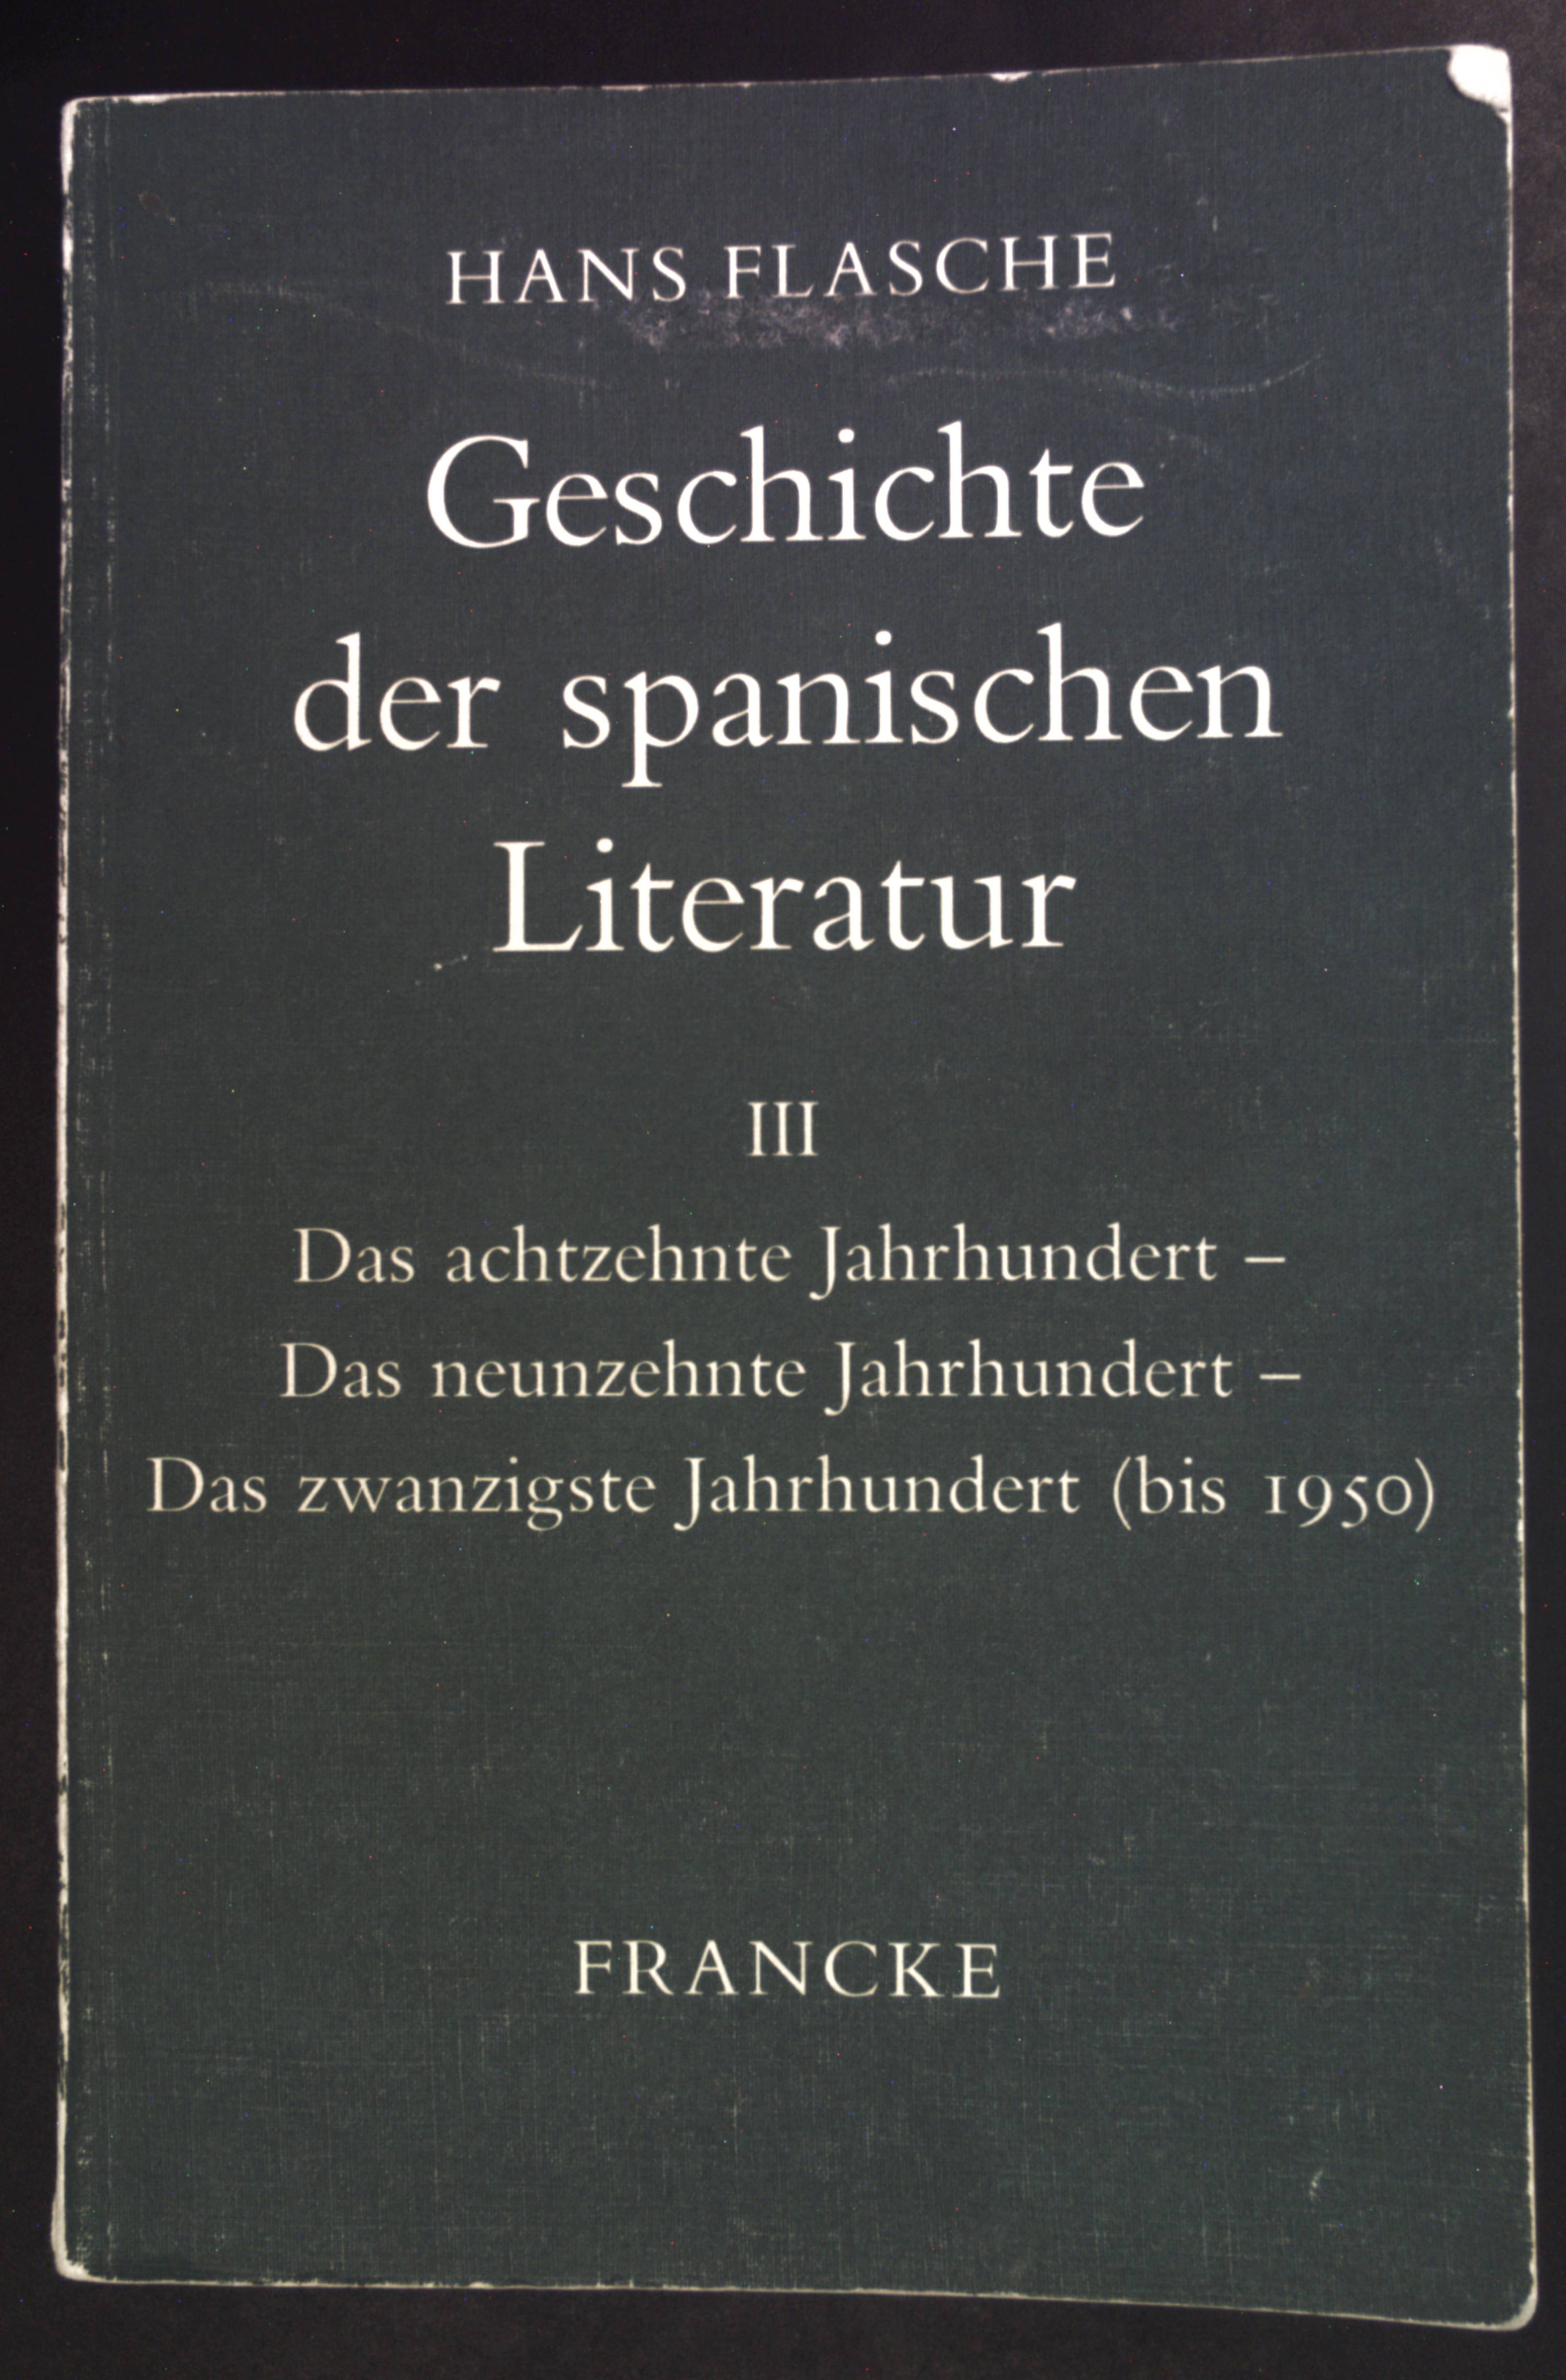 Geschichte der spanischen Literatur Band 3: Das achtzehnte Jahrhundert, das neunzehnte Jahrhundert, das zwanzigste Jahrhundert (bis 1950). - Flasche, Hans